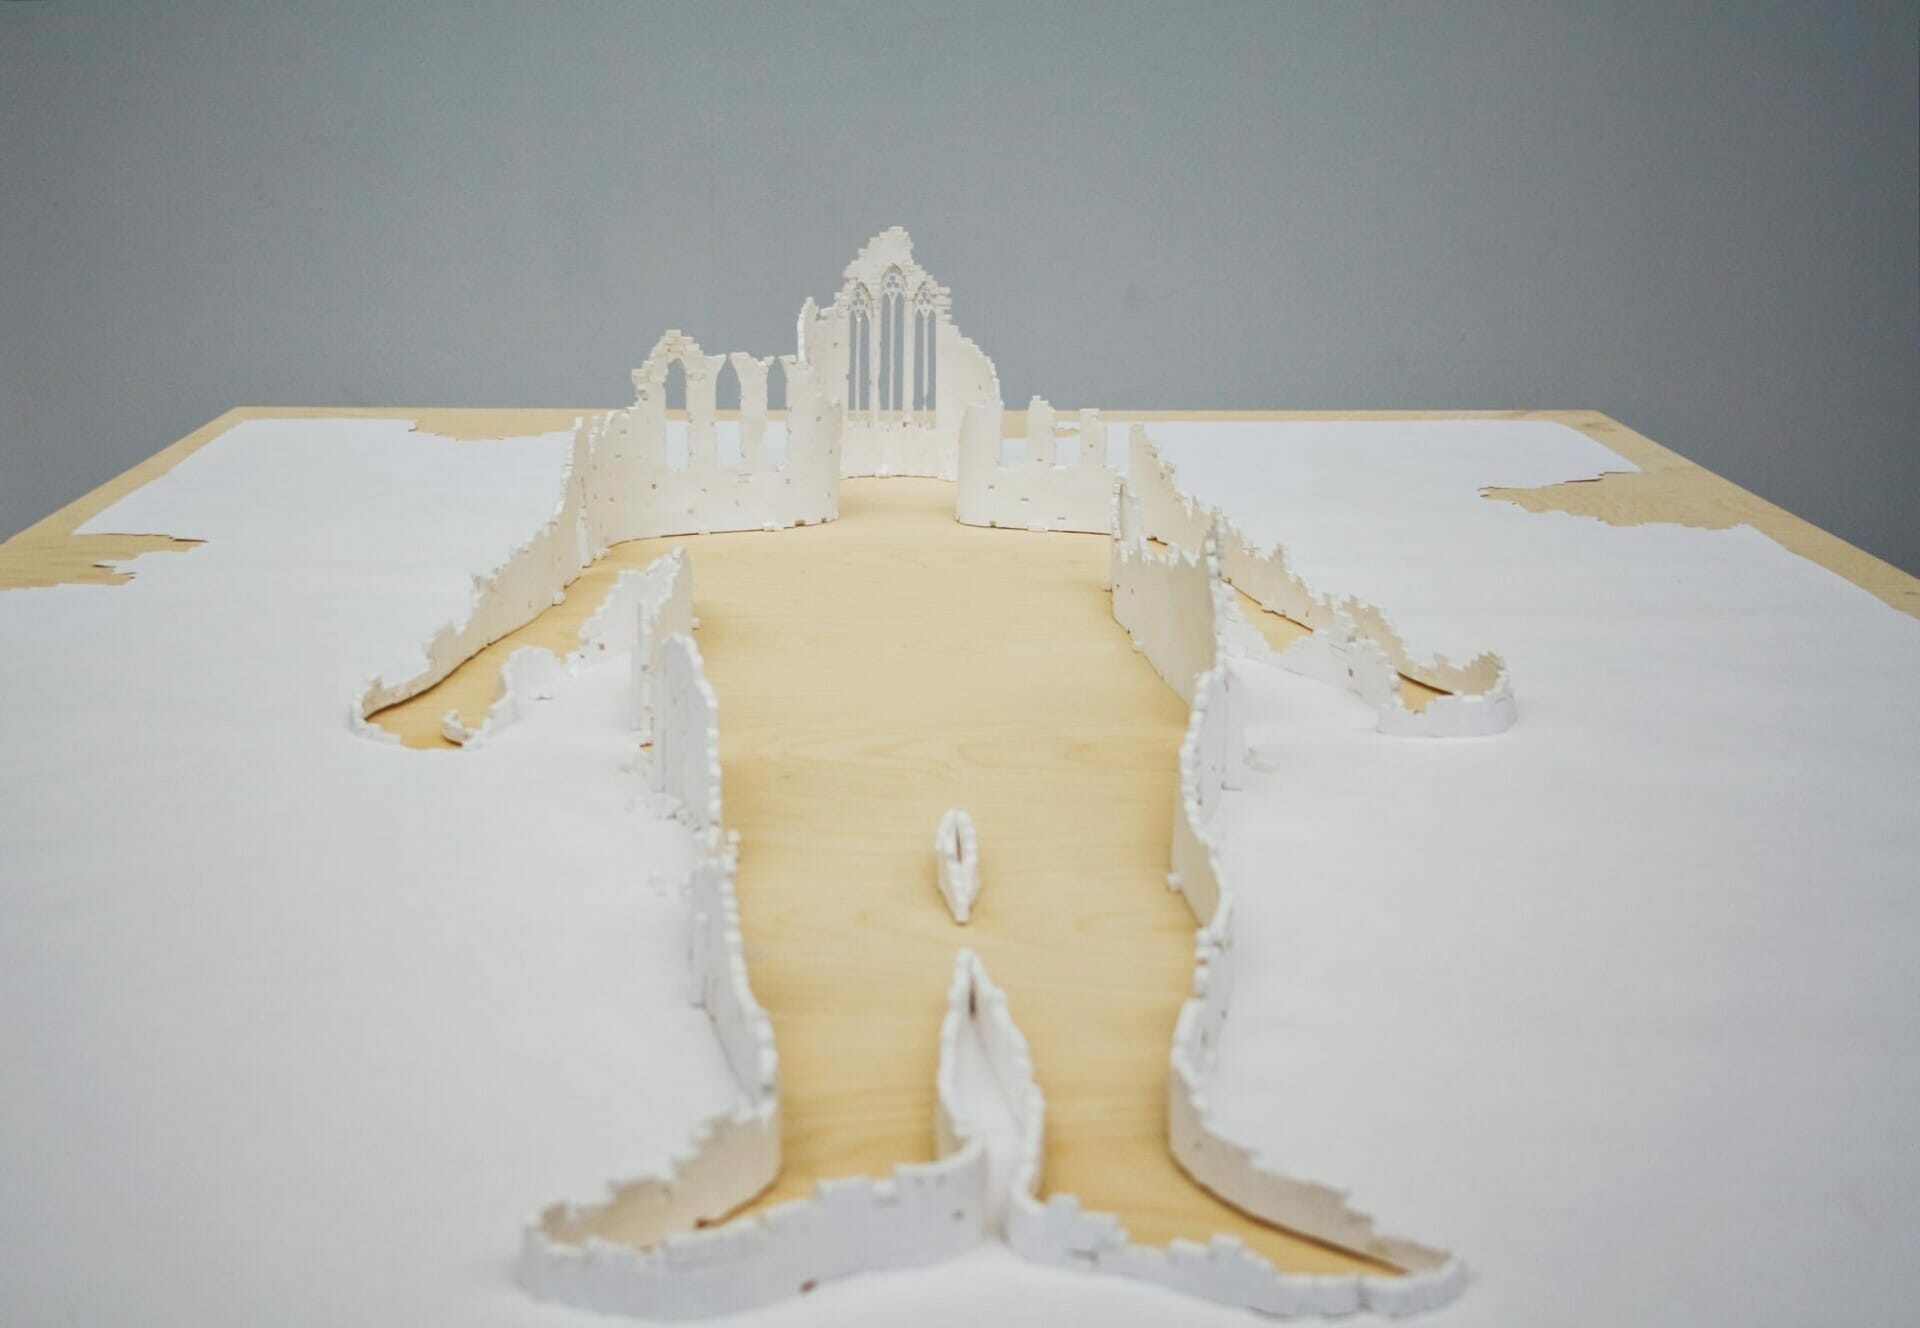 Peter Callesen maakt indrukwekkende bouwwerken uit 1 vel papier